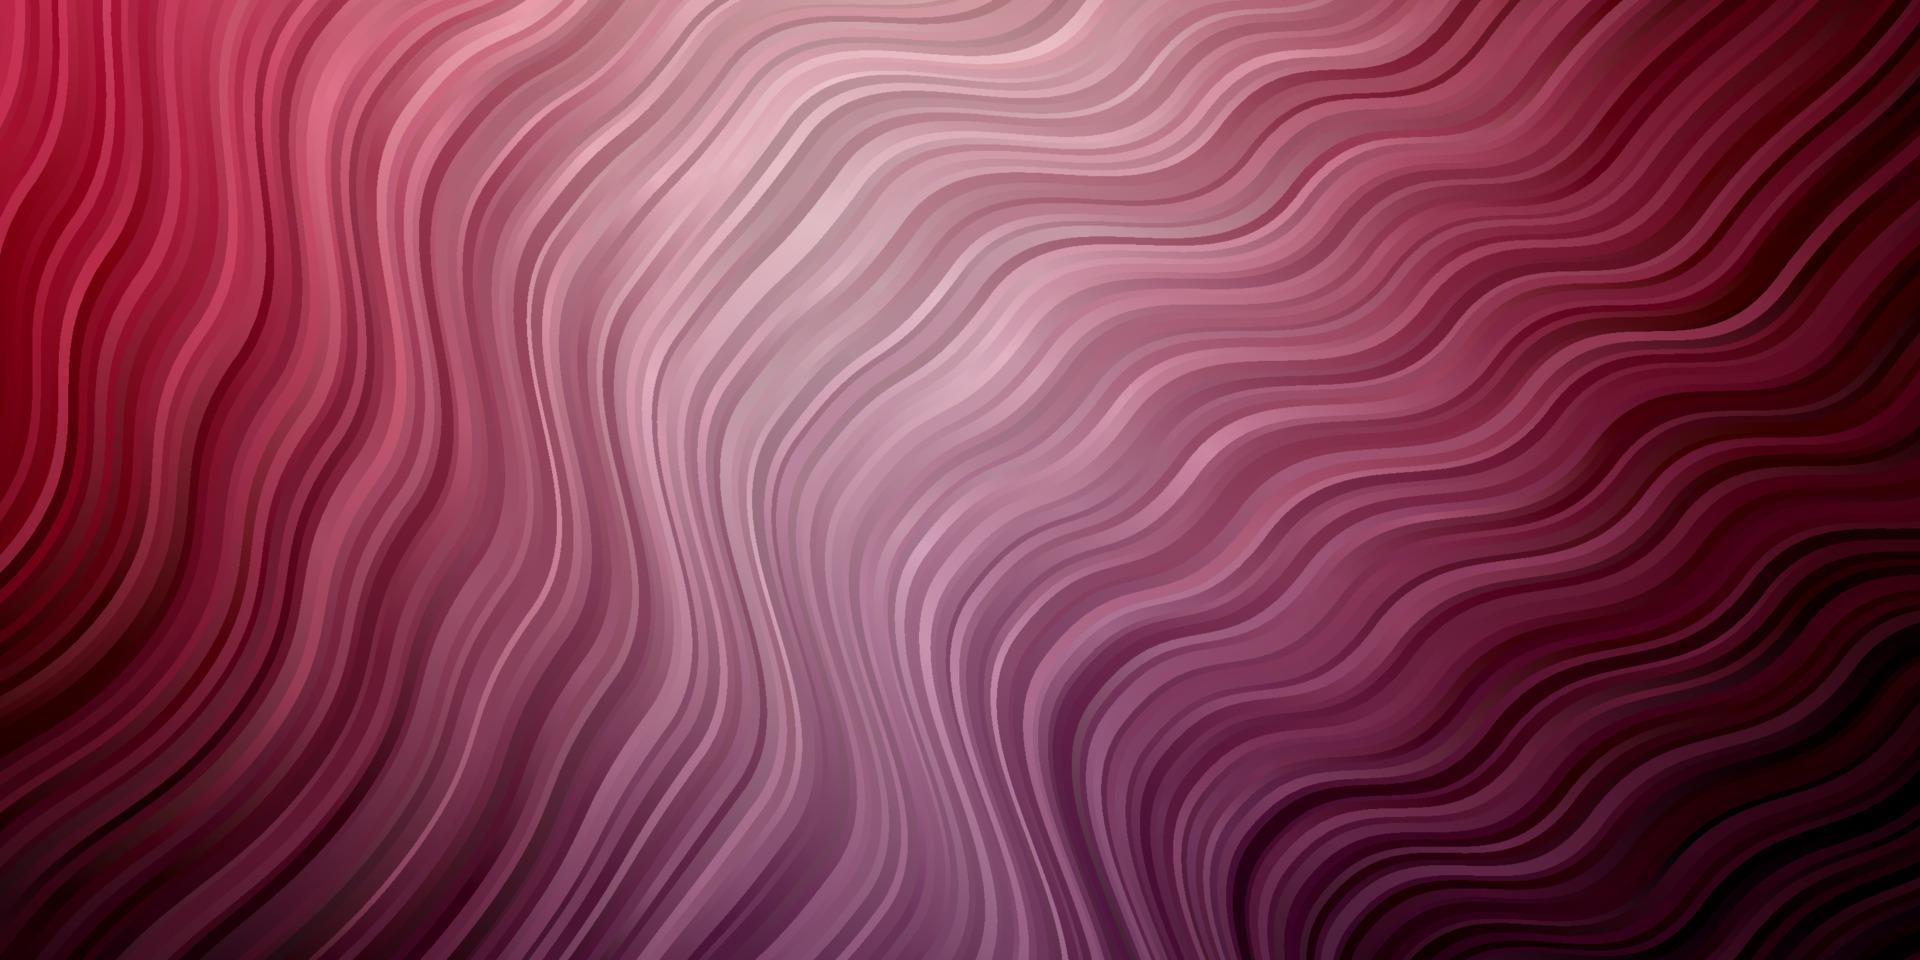 Fondo de vector púrpura oscuro, rosa con líneas dobladas.